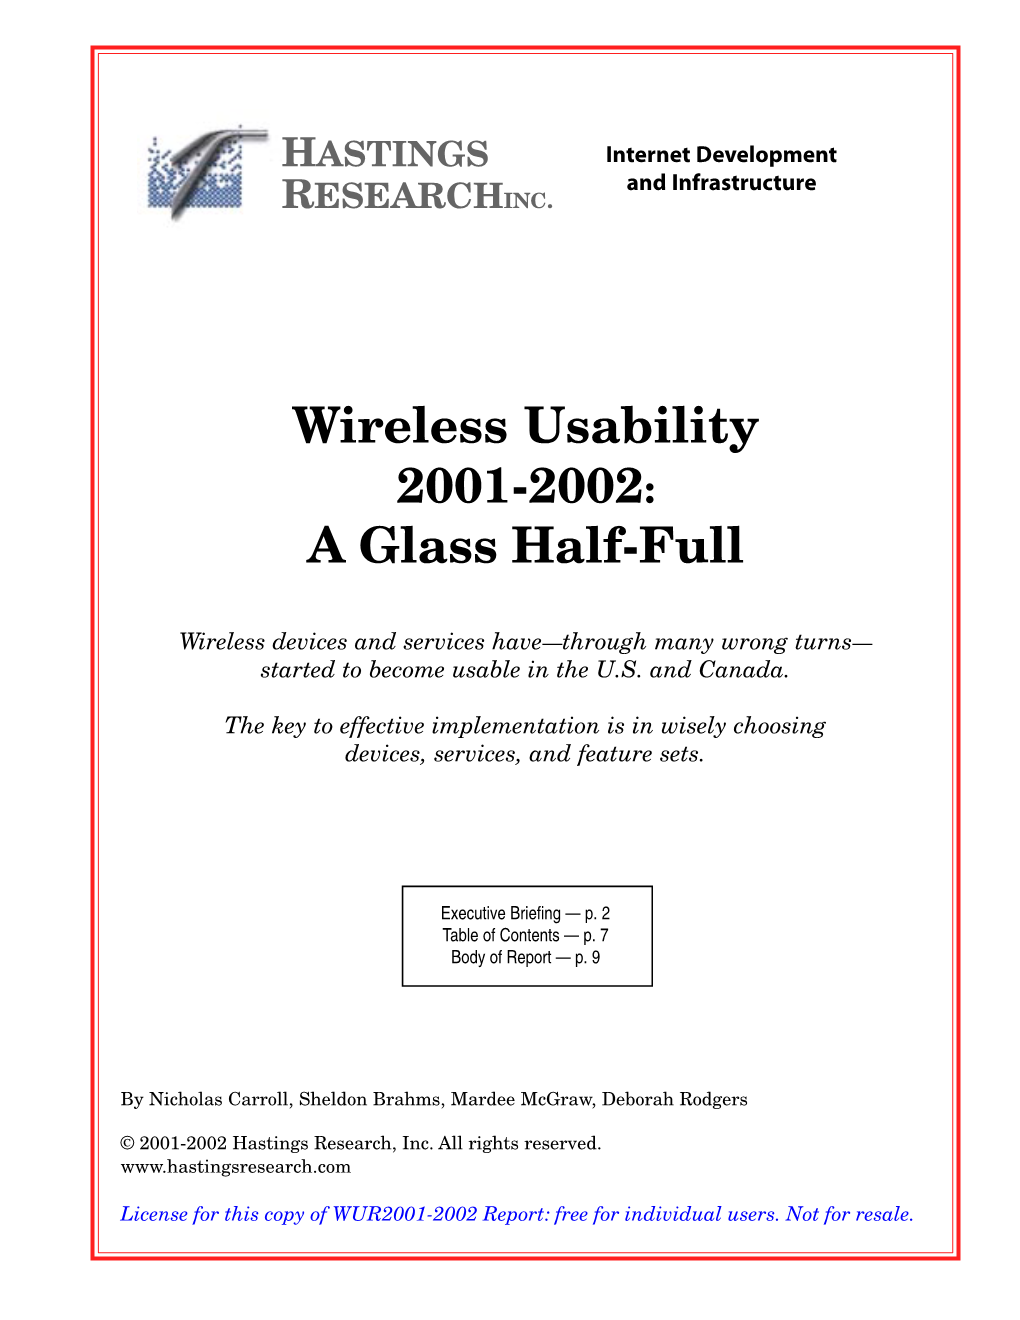 Wireless Usability Report 2001